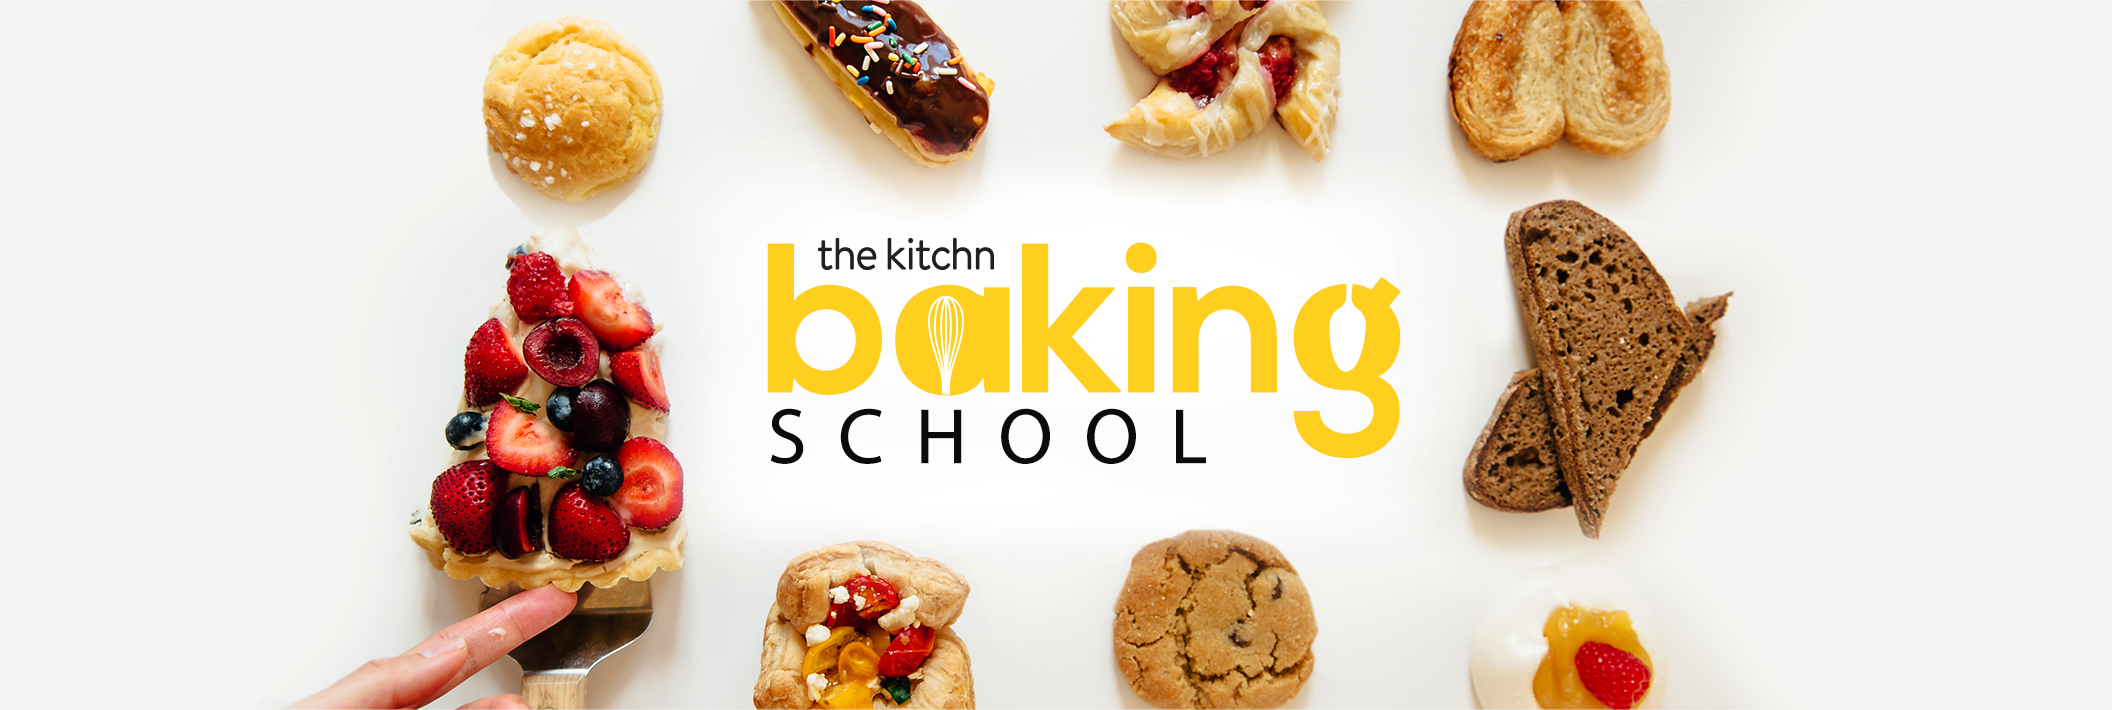 baking school near me